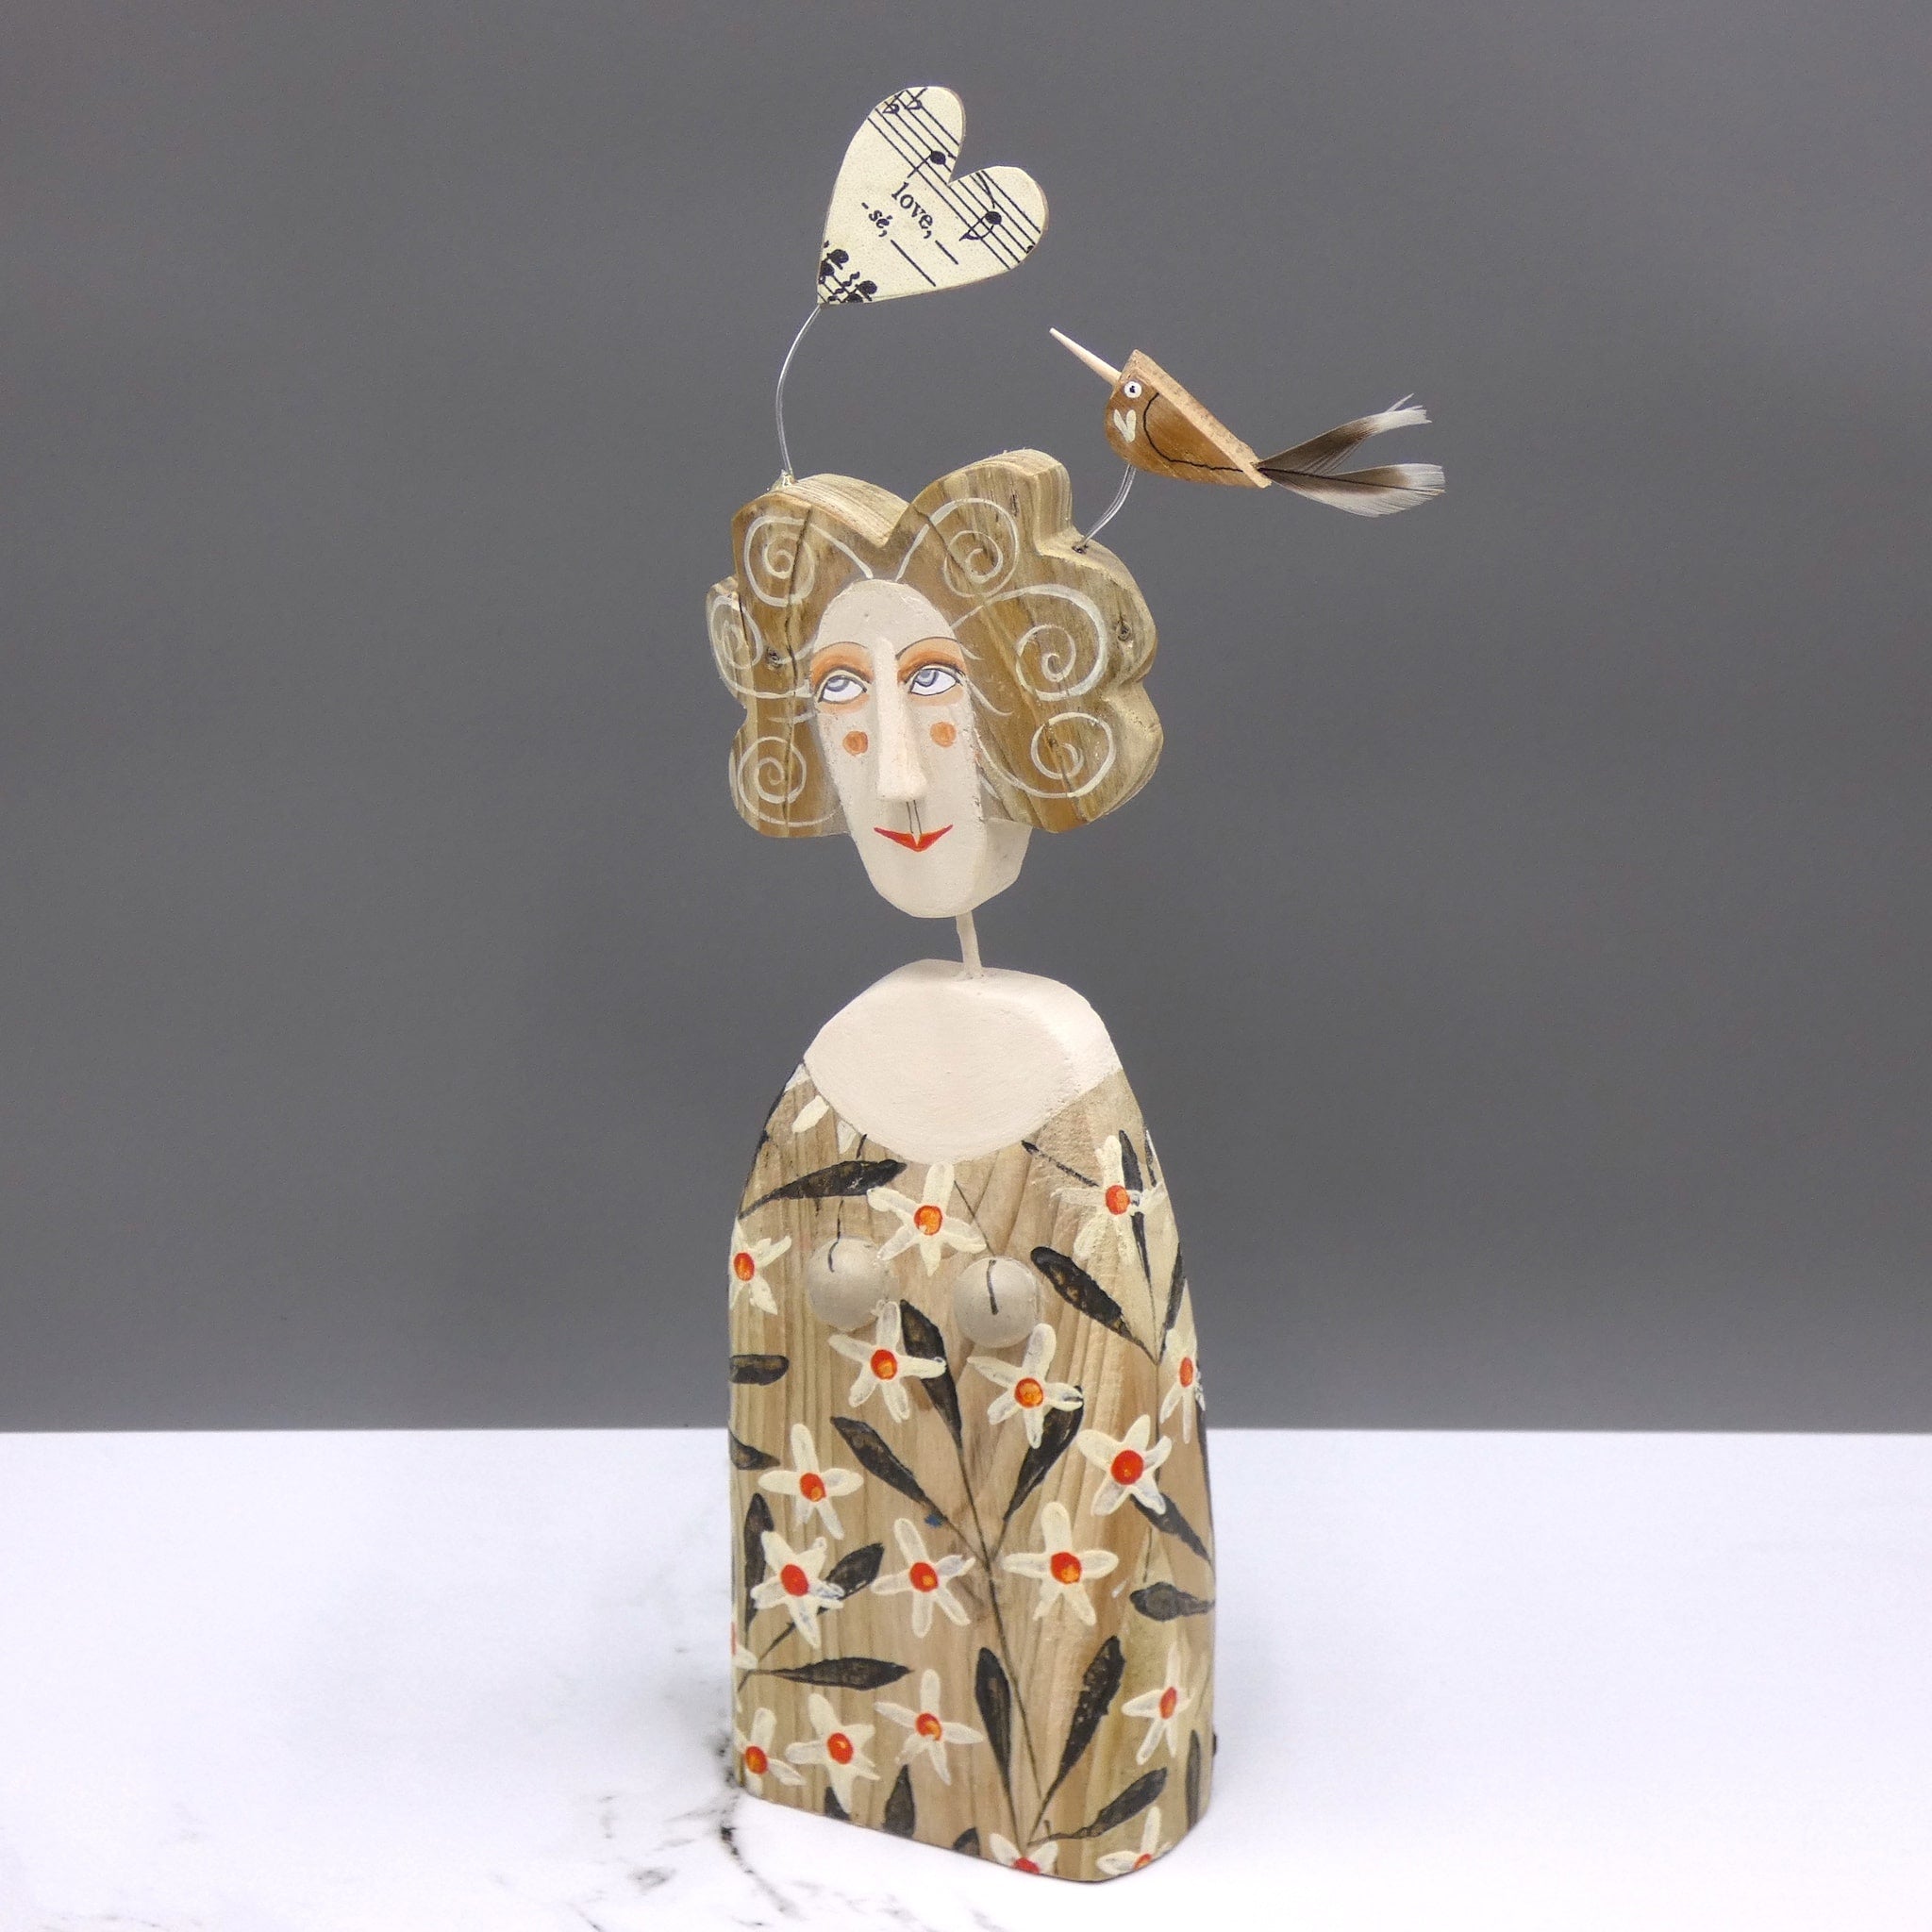 Driftwood sculpture of a bird sitting on a lady's hair by artist Lynn Muir.